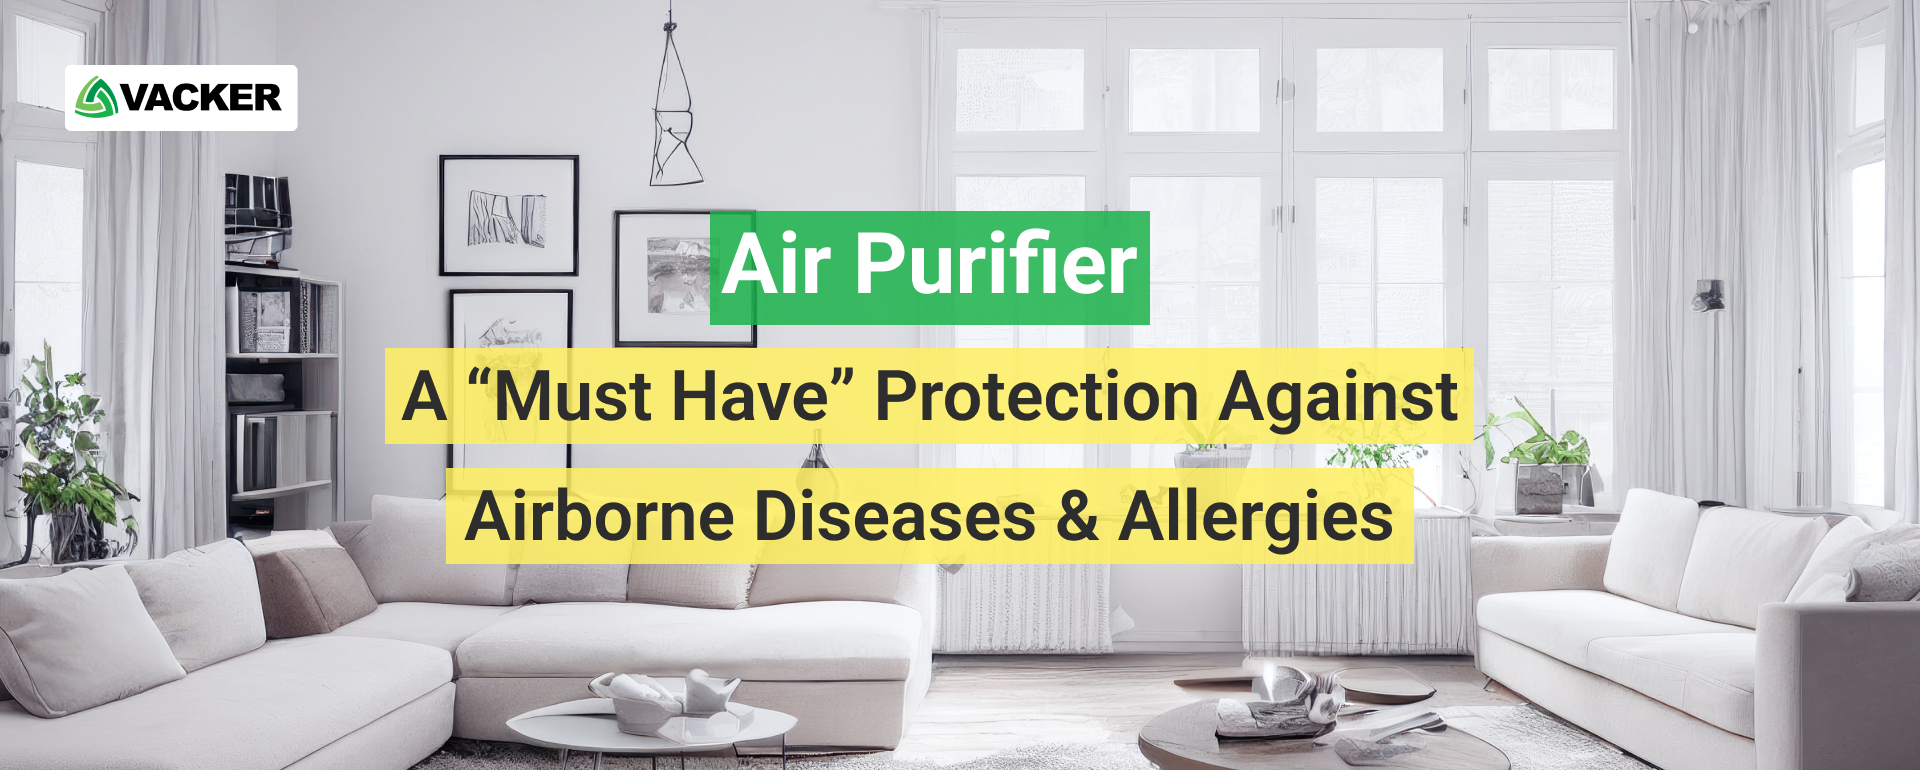 منقي الهواء - حماية "لا غنى عنها" ضد الأمراض المنقولة بالهواء & الحساسية